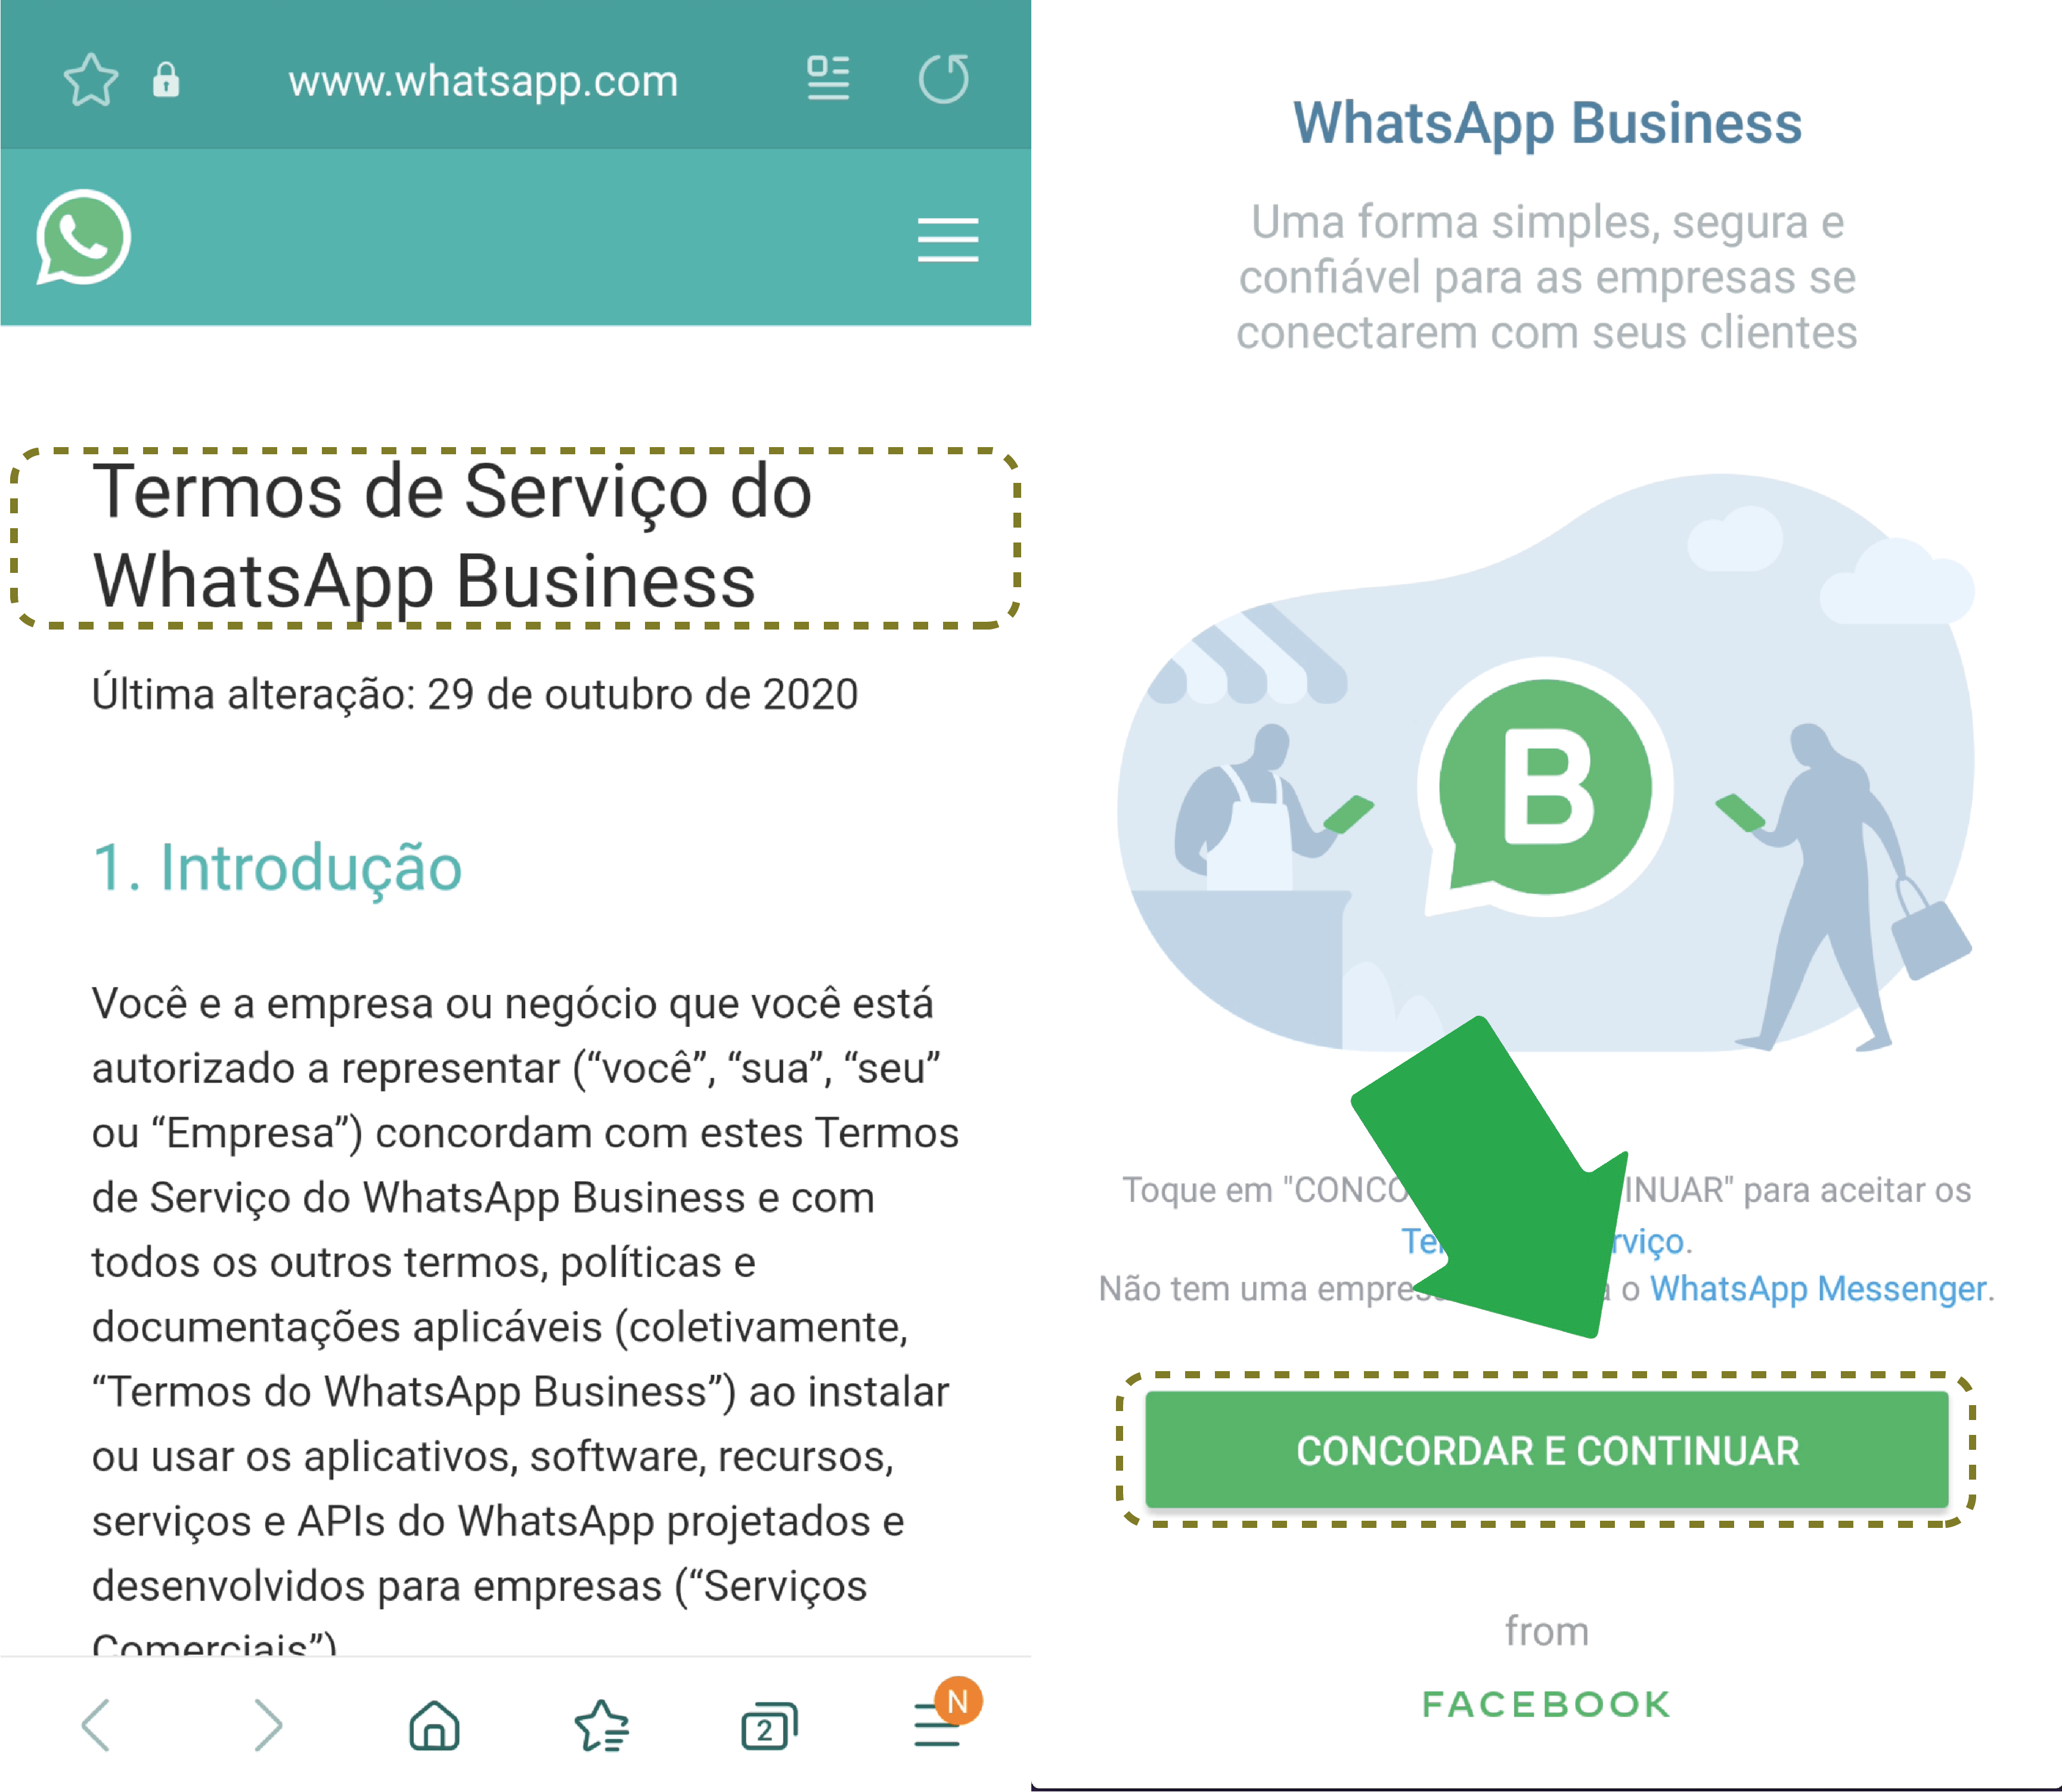 Leia todos os termos de serviço do WhatsApp Business e em seguida pressione concordar e continuar.